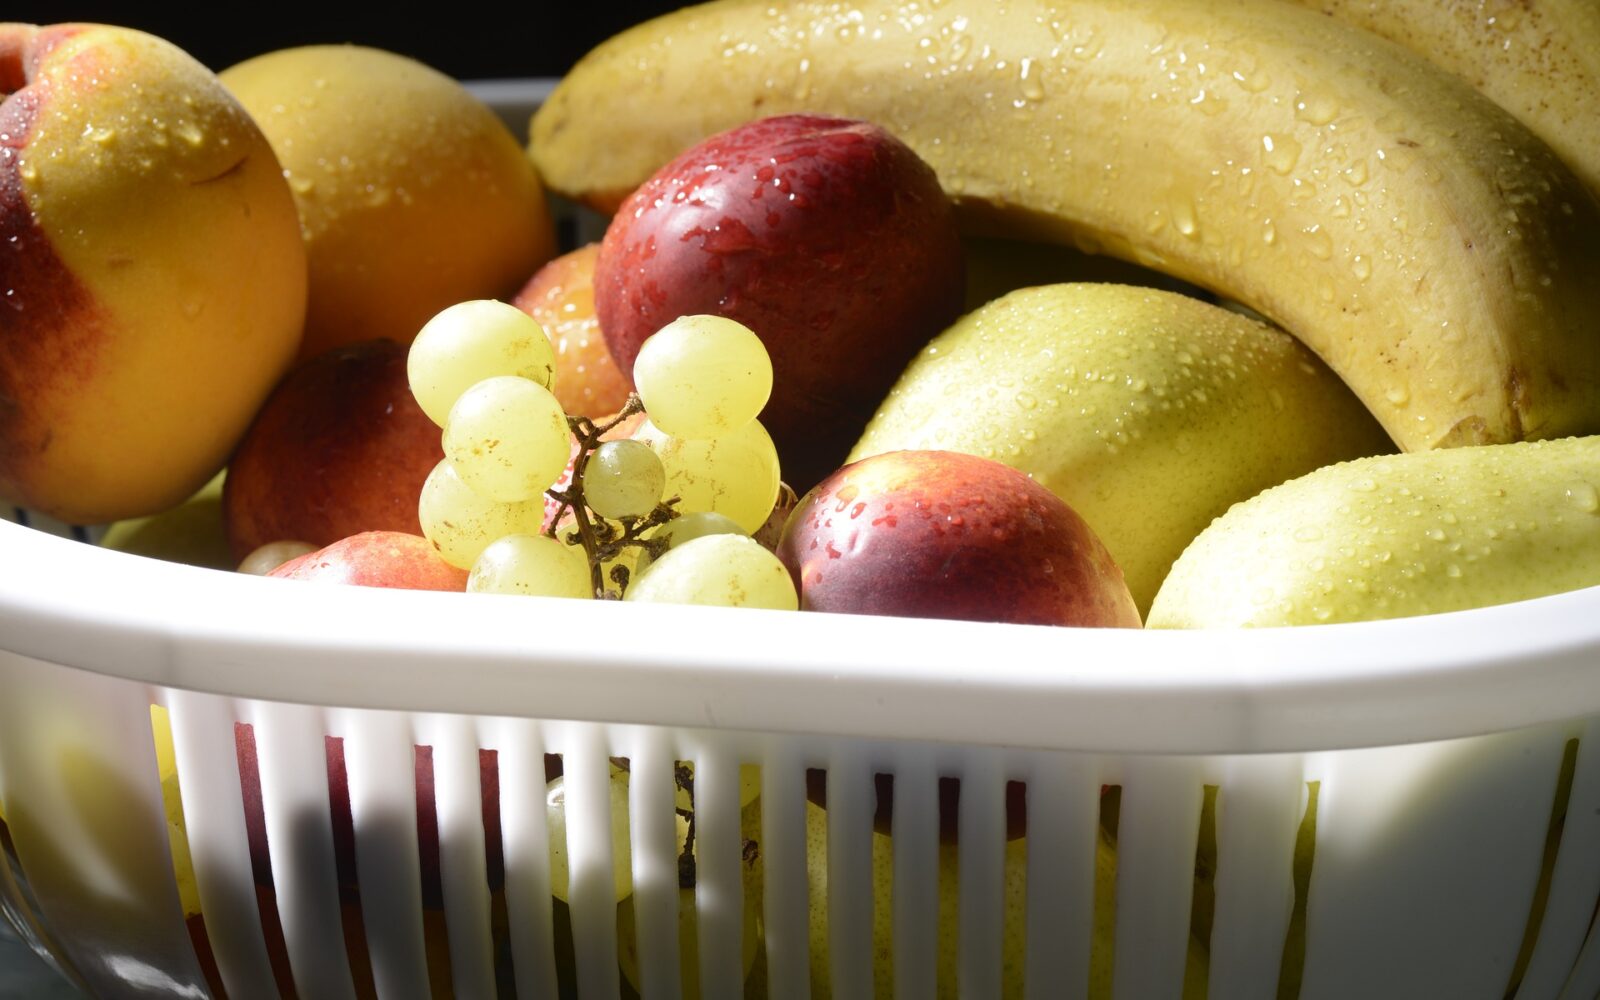 Stručnjak otkriva kako ukloniti pesticide s voća i povrća